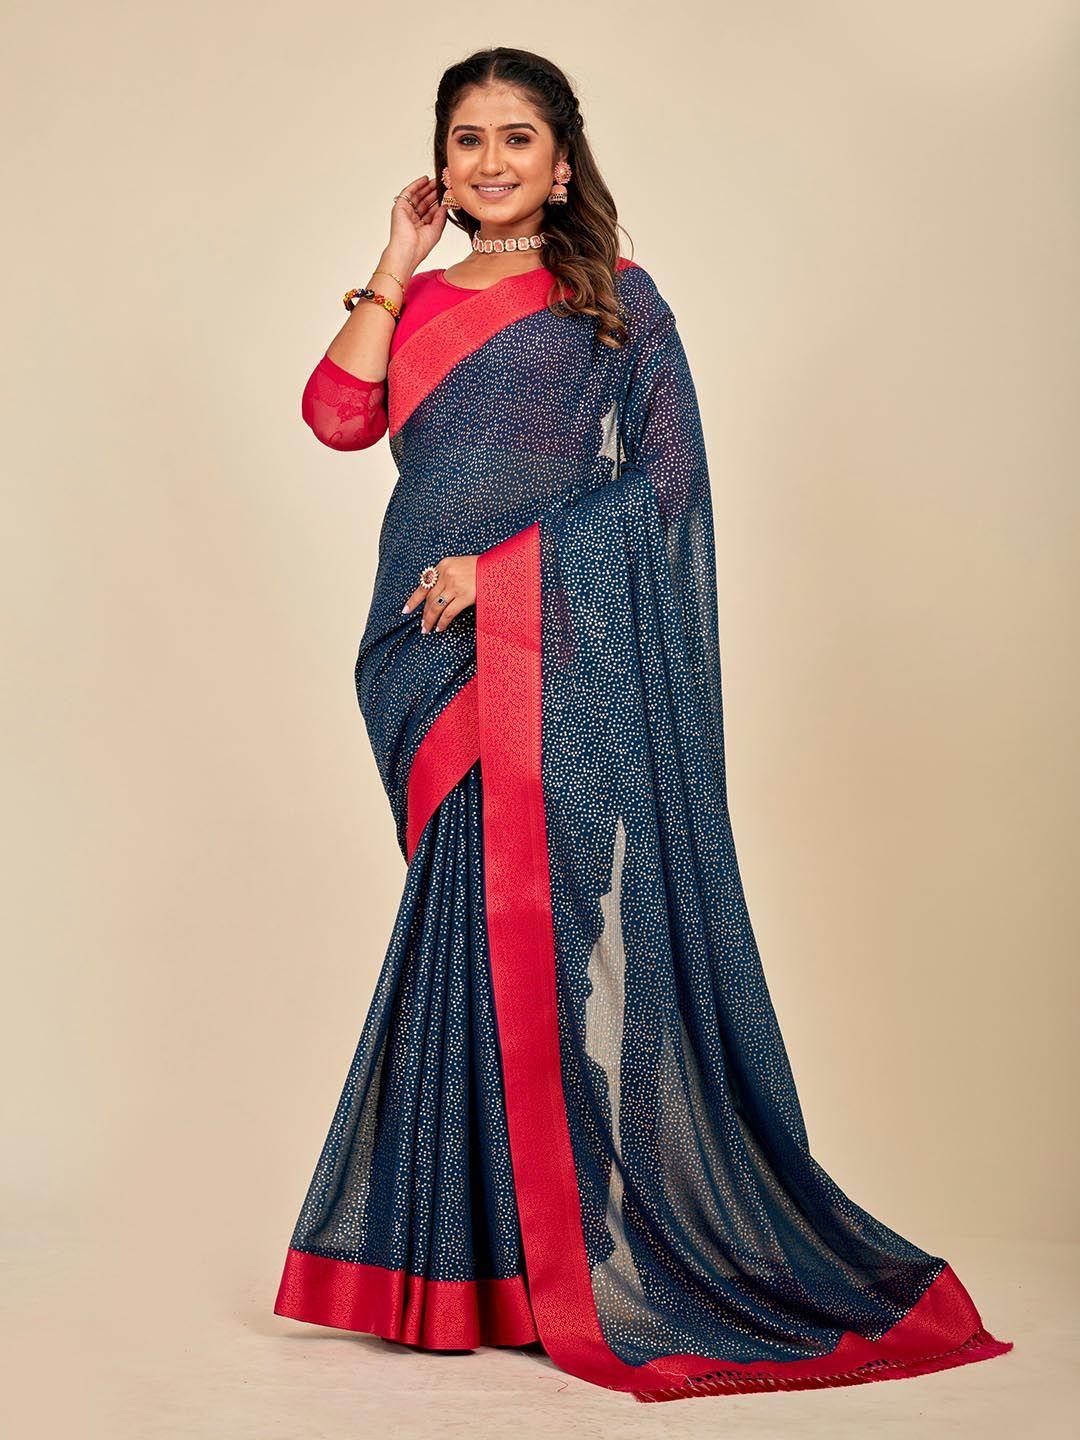 mahalasa embellished  saree